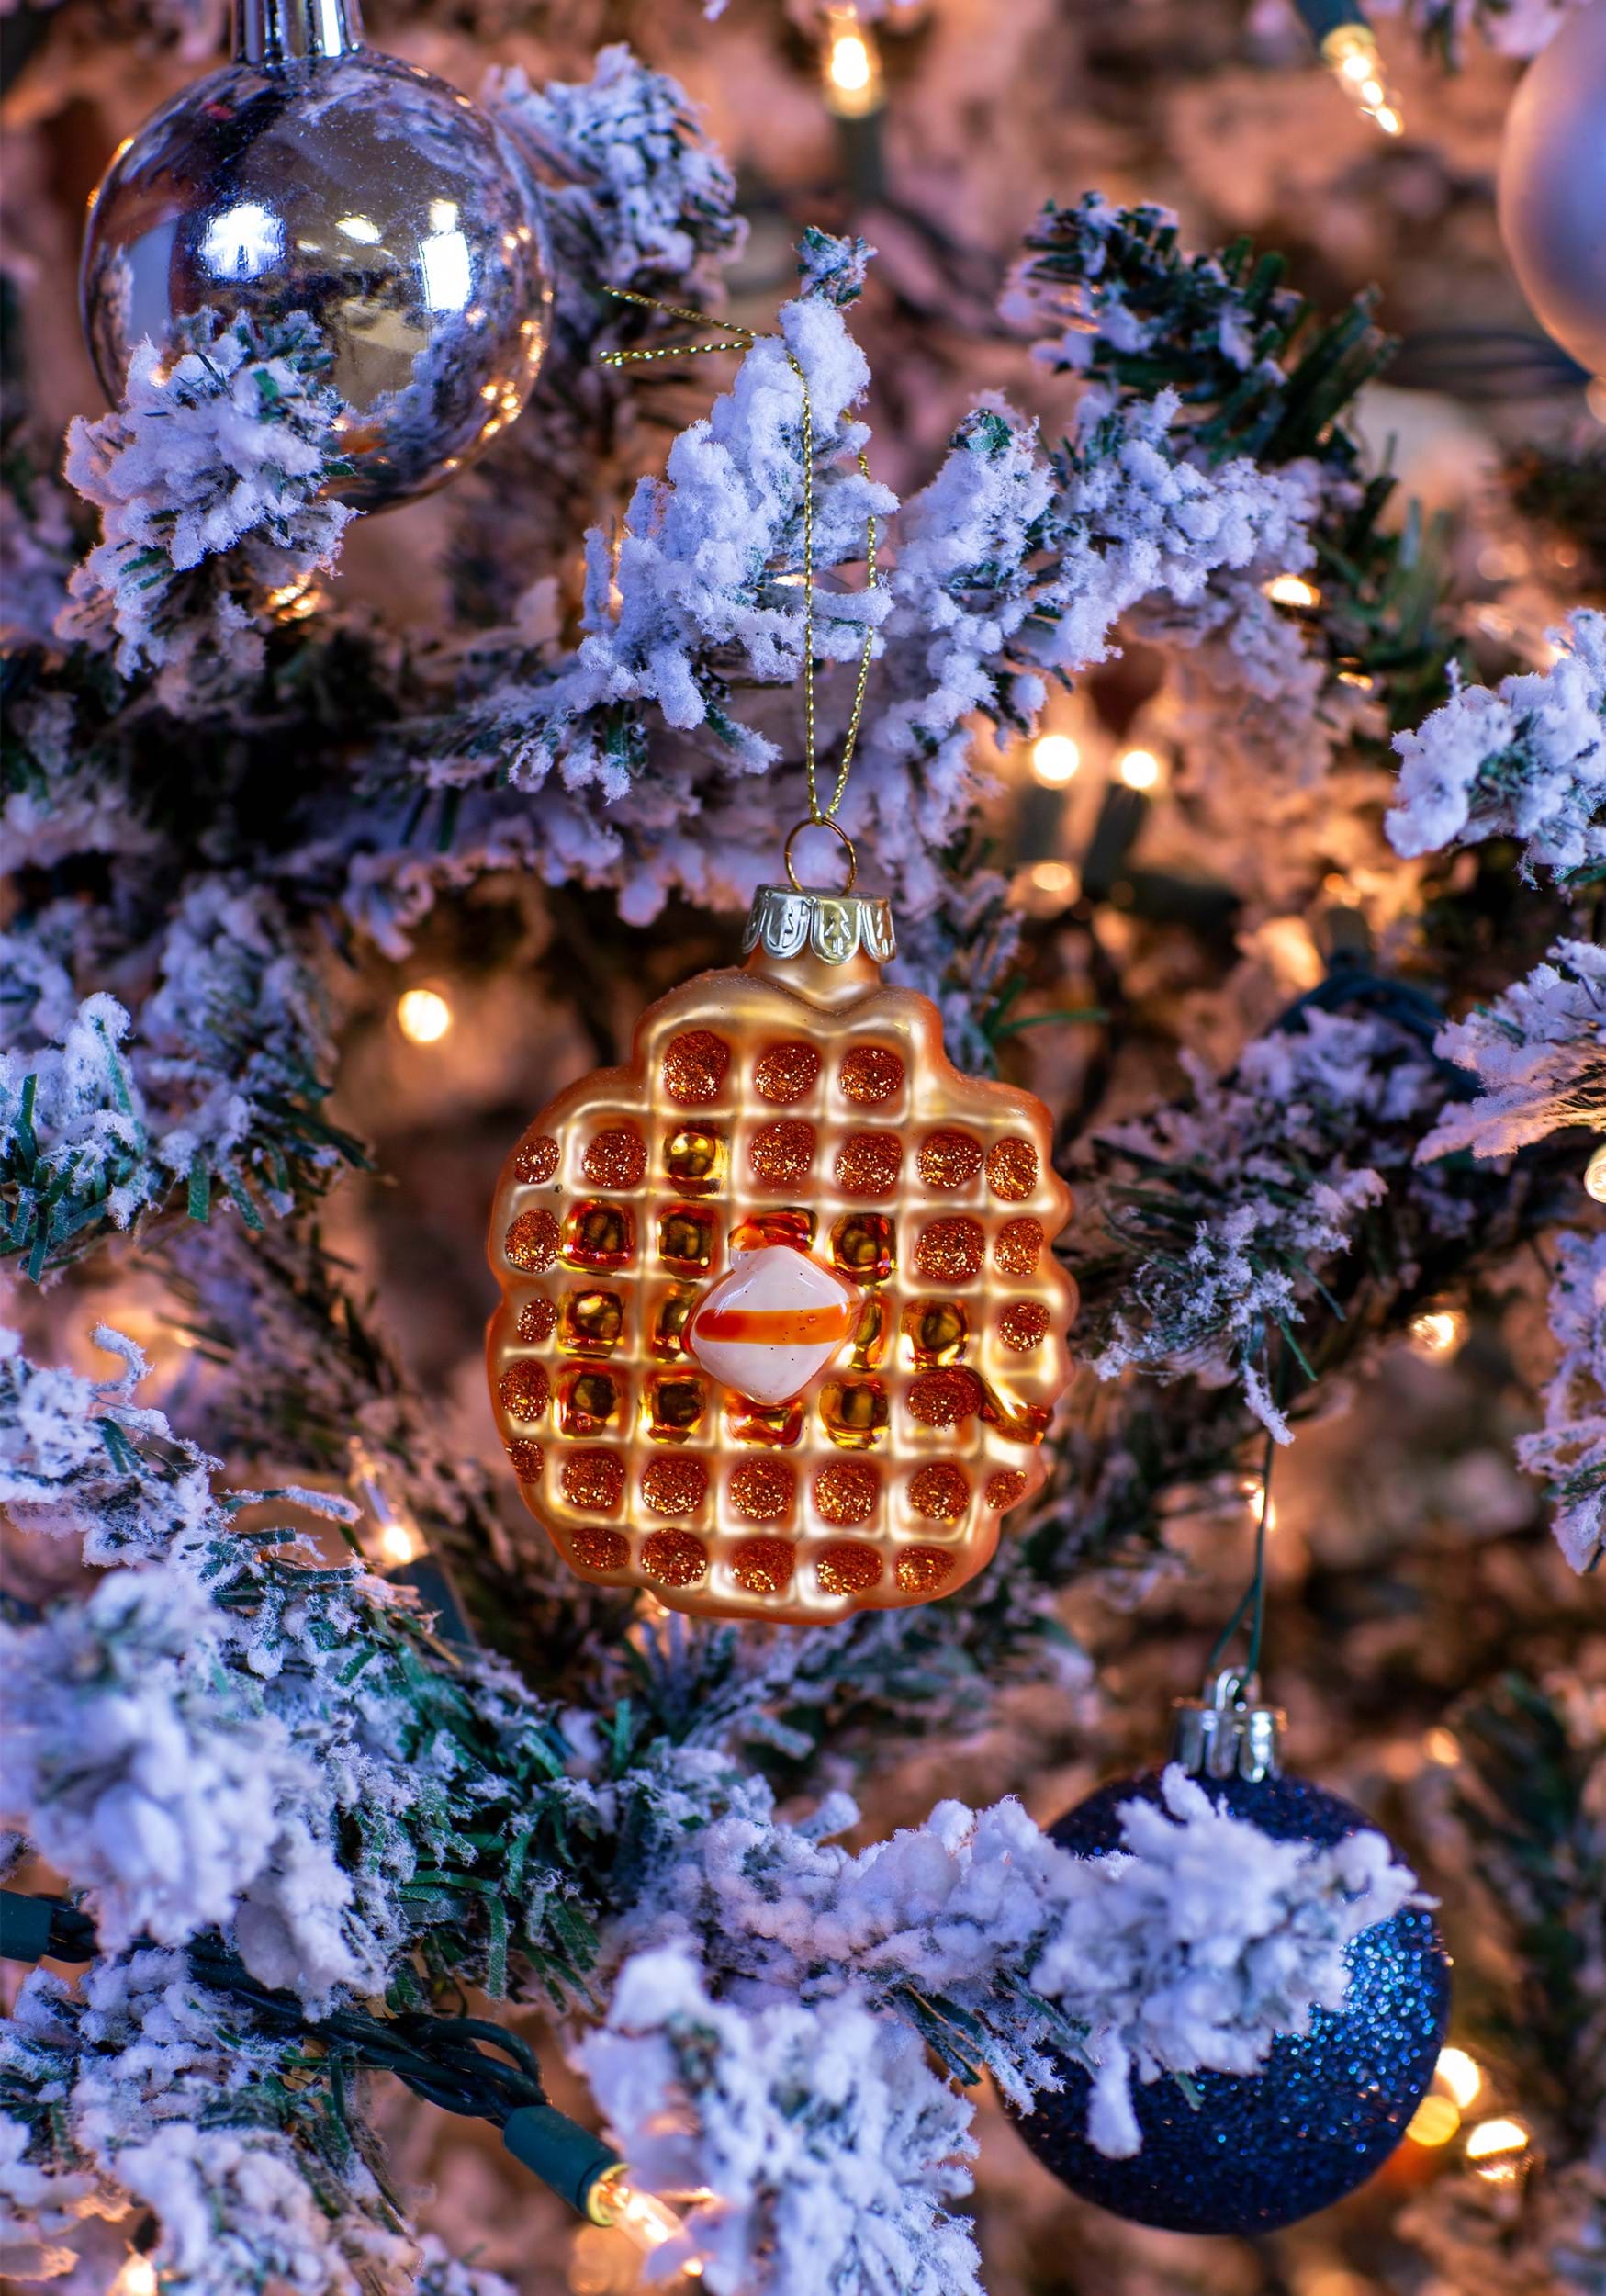 Cute Blue Waffle Maker Ornament, Food Ornament, Funny Ornament